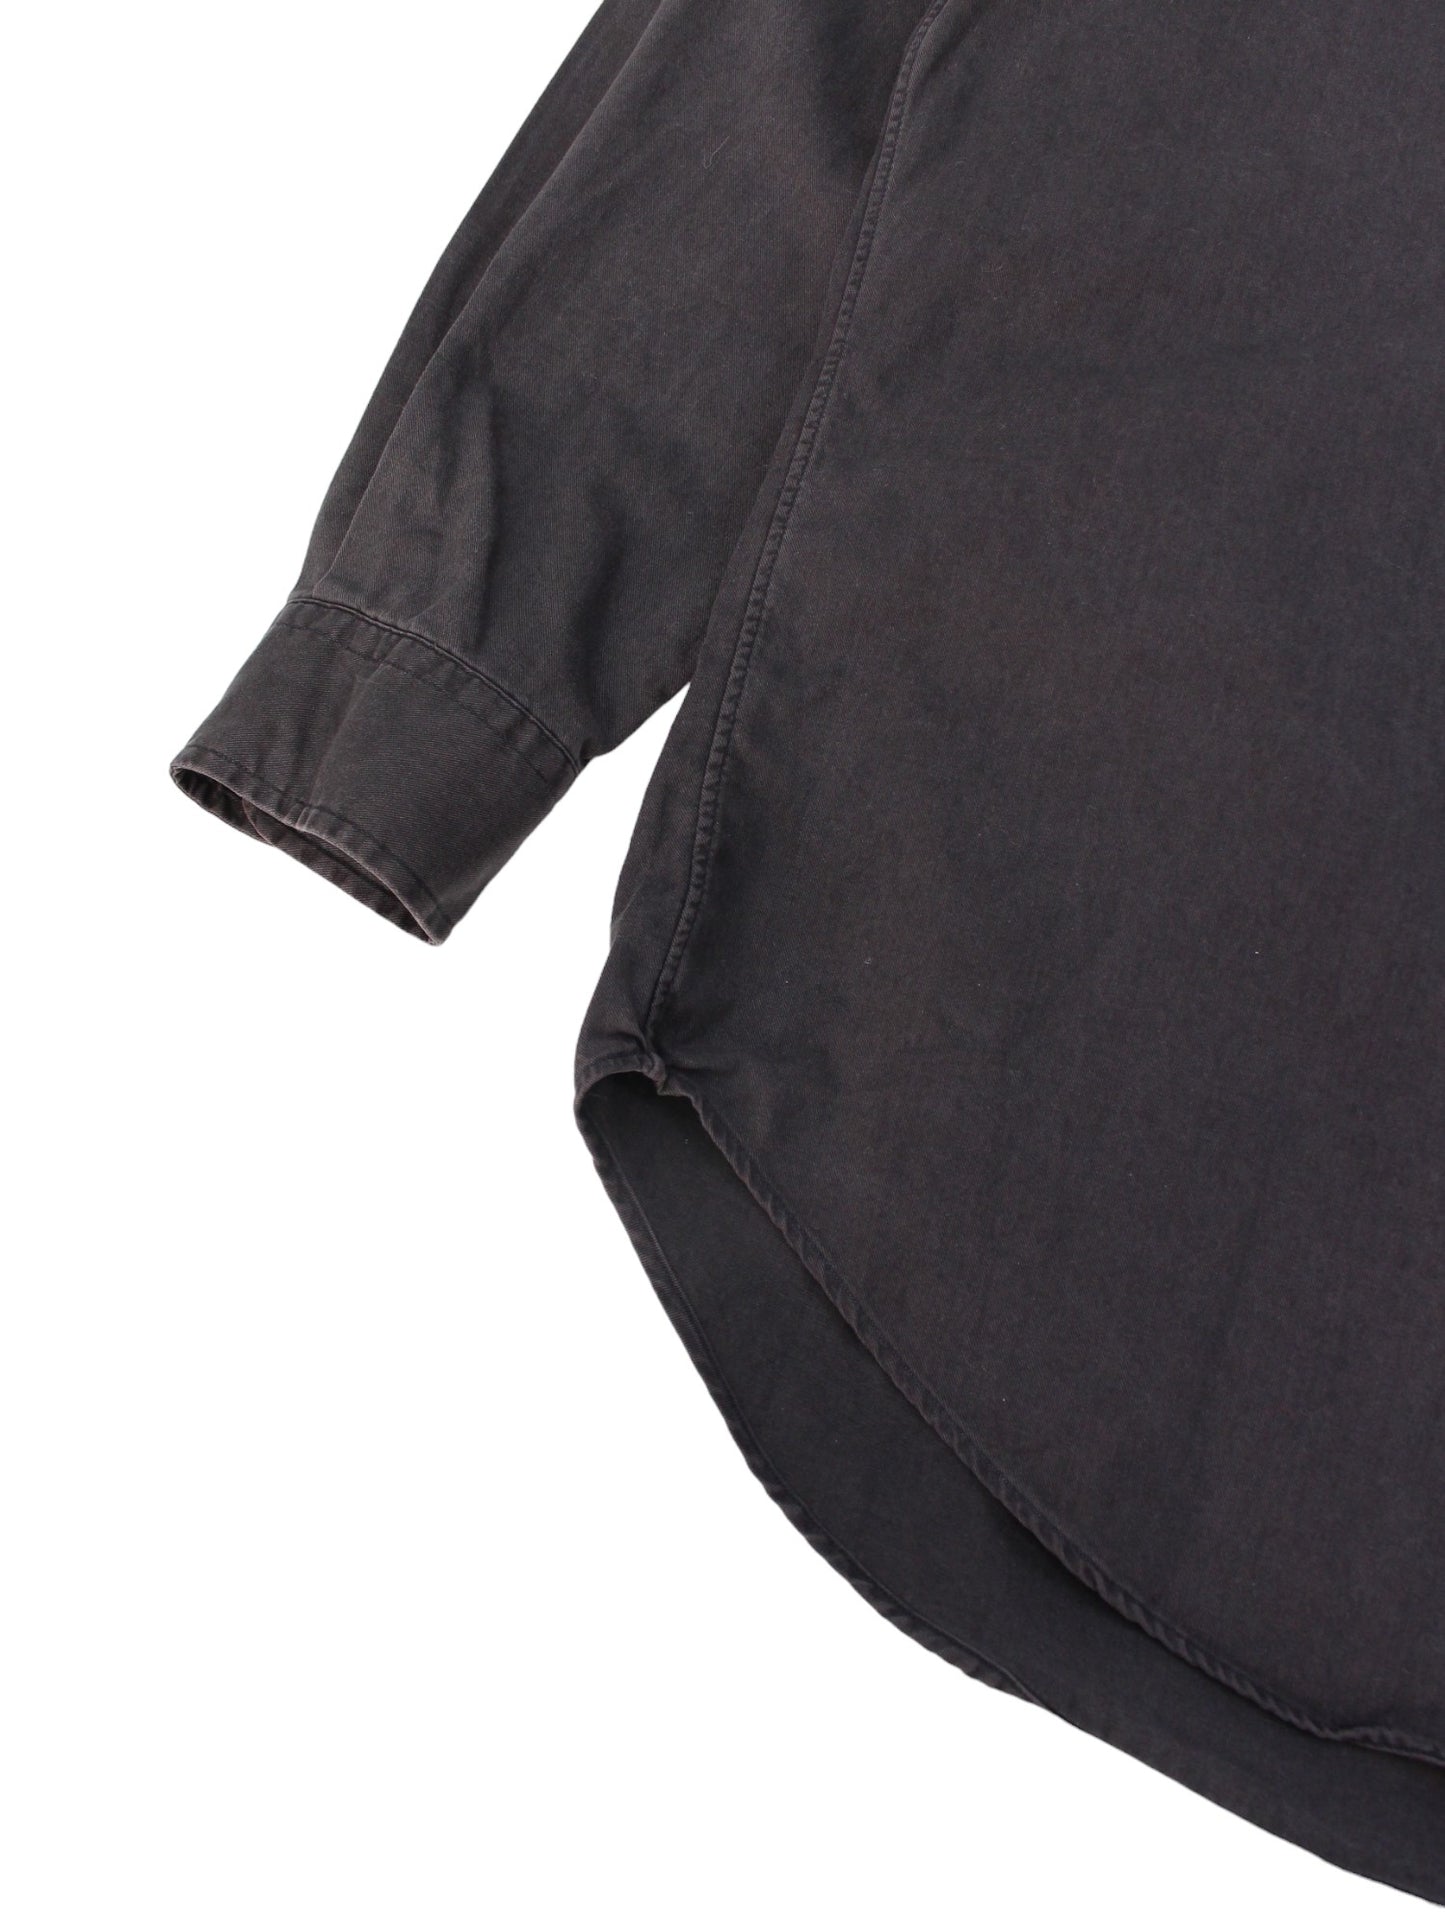 90s Polo Ralph Lauren Black Heavyweight Shirt (XL)